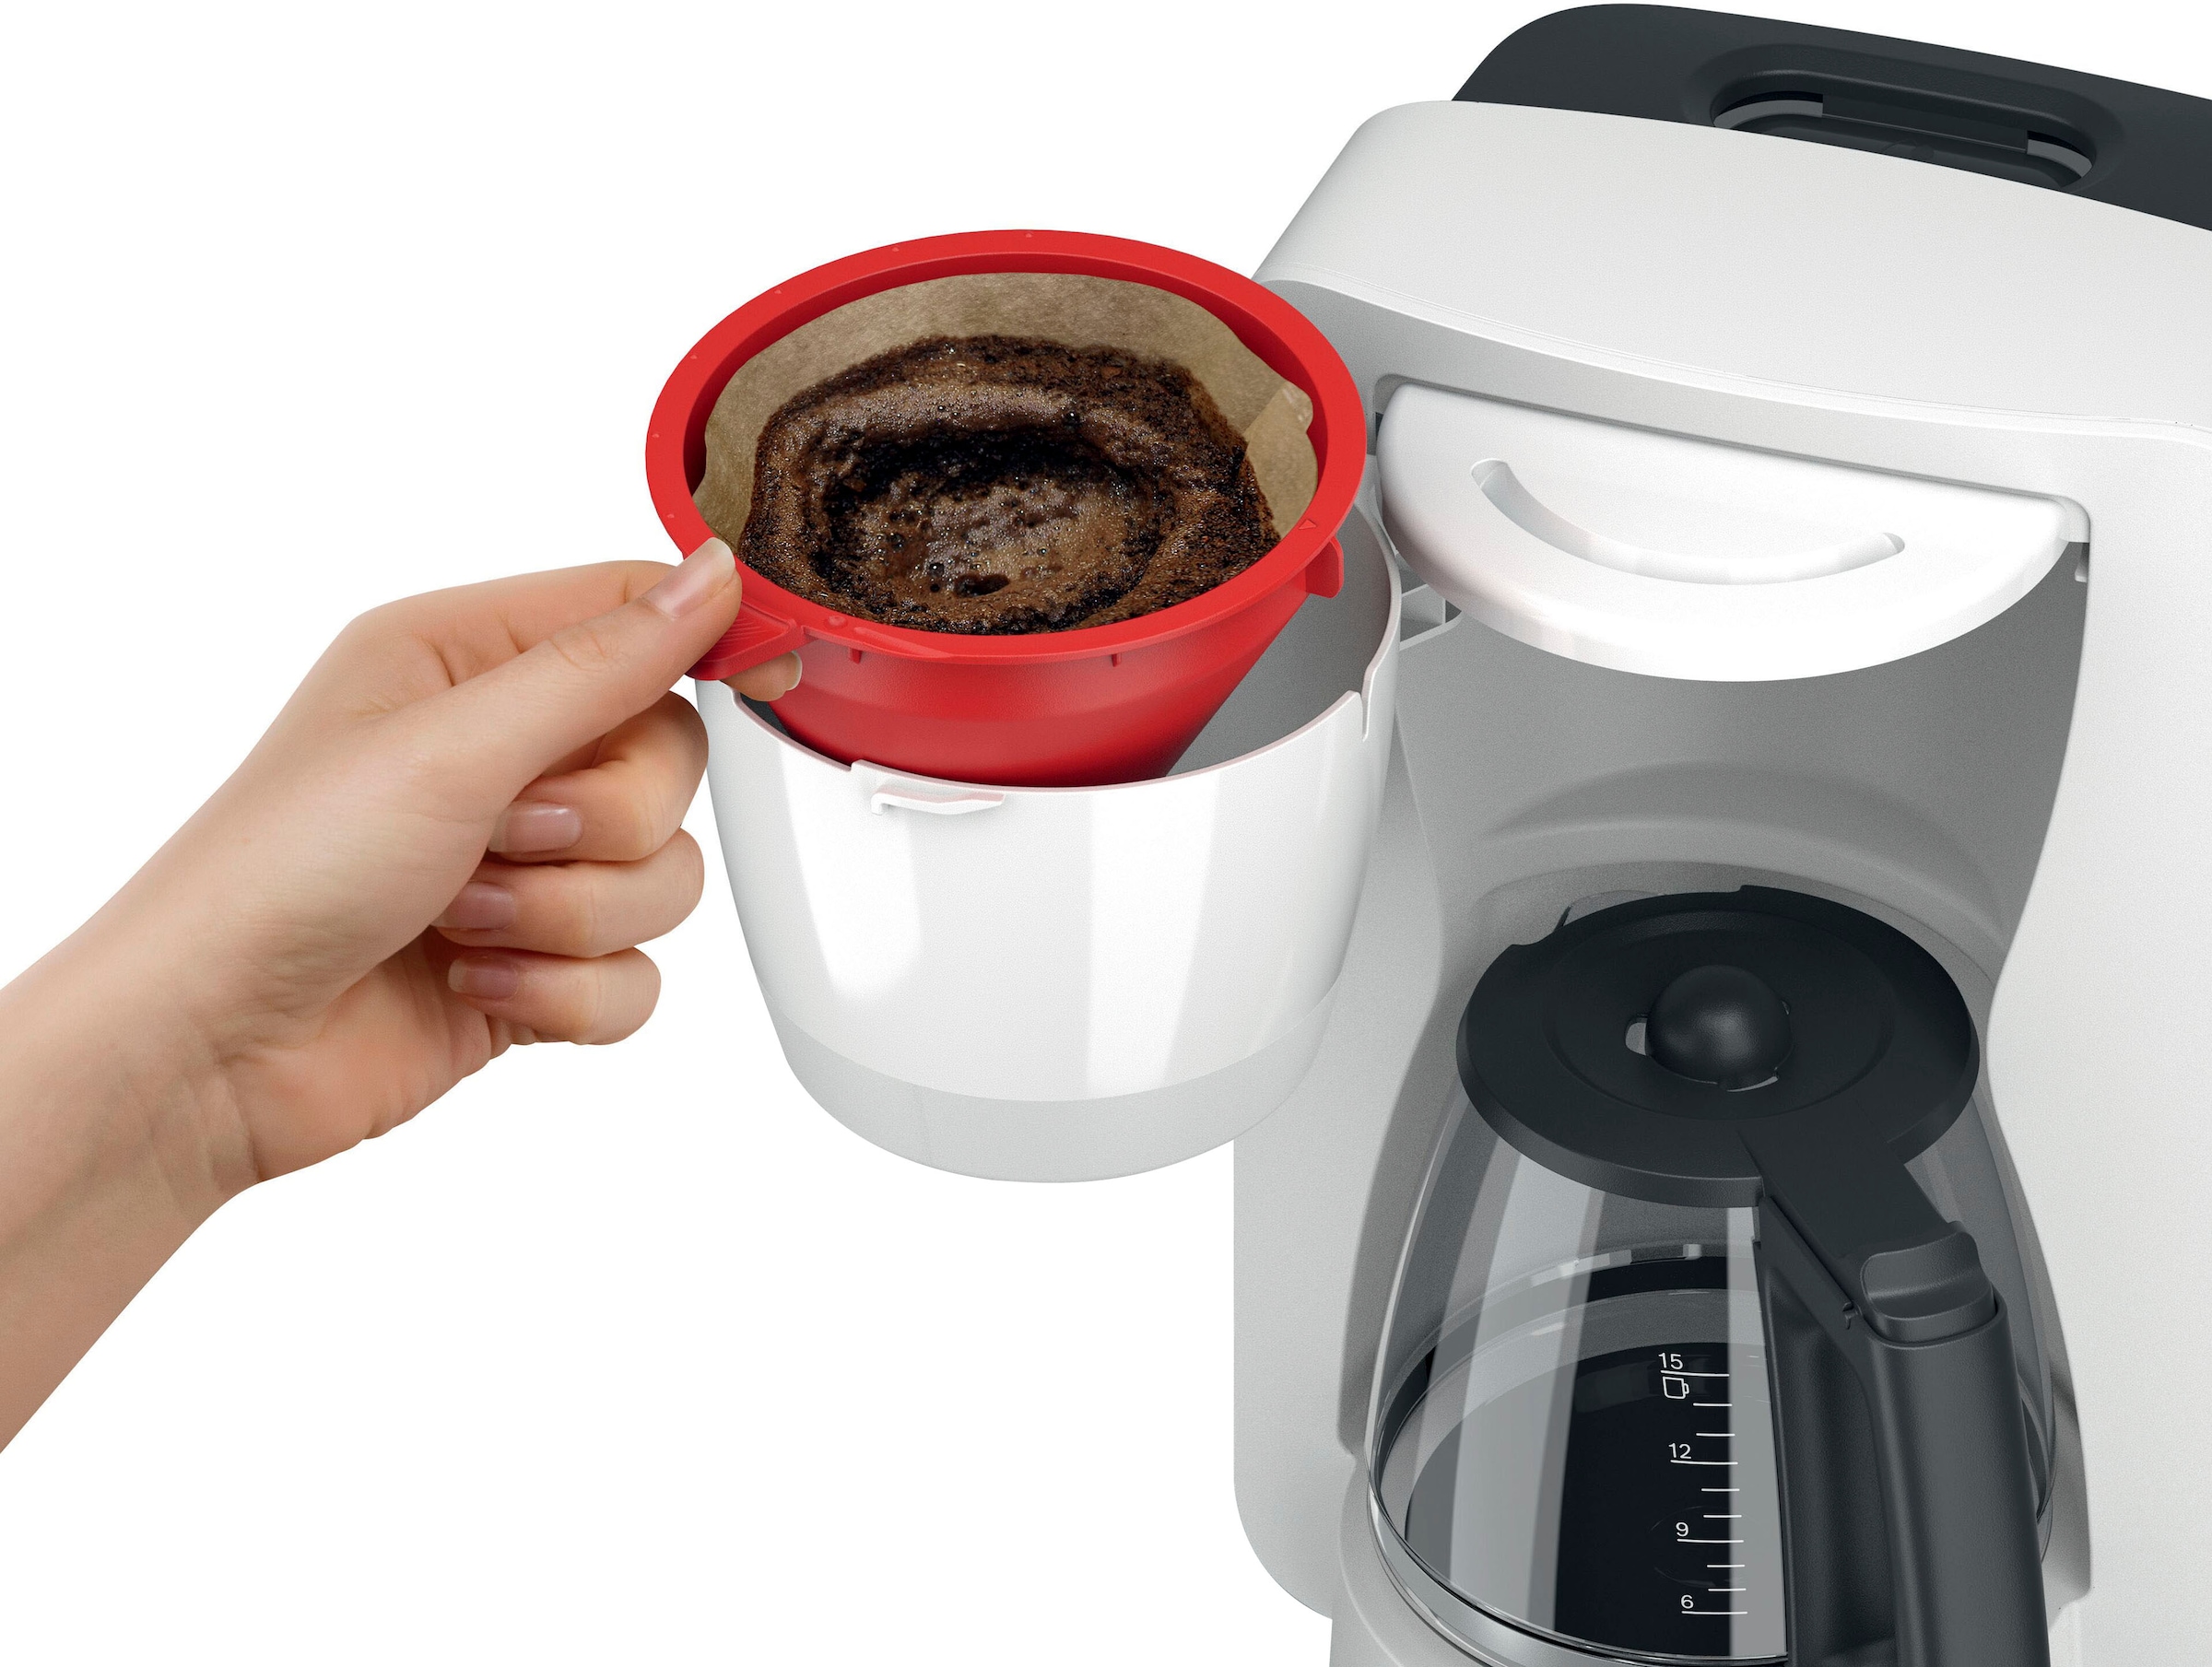 BOSCH Filterkaffeemaschine »MyMoment TKA2M111«, 1,25 l Kaffeekanne, Papierfilter, 1x4, für 10-15 Tassen, Glaskanne, 40min Warmhaltefunktion, 1200 W